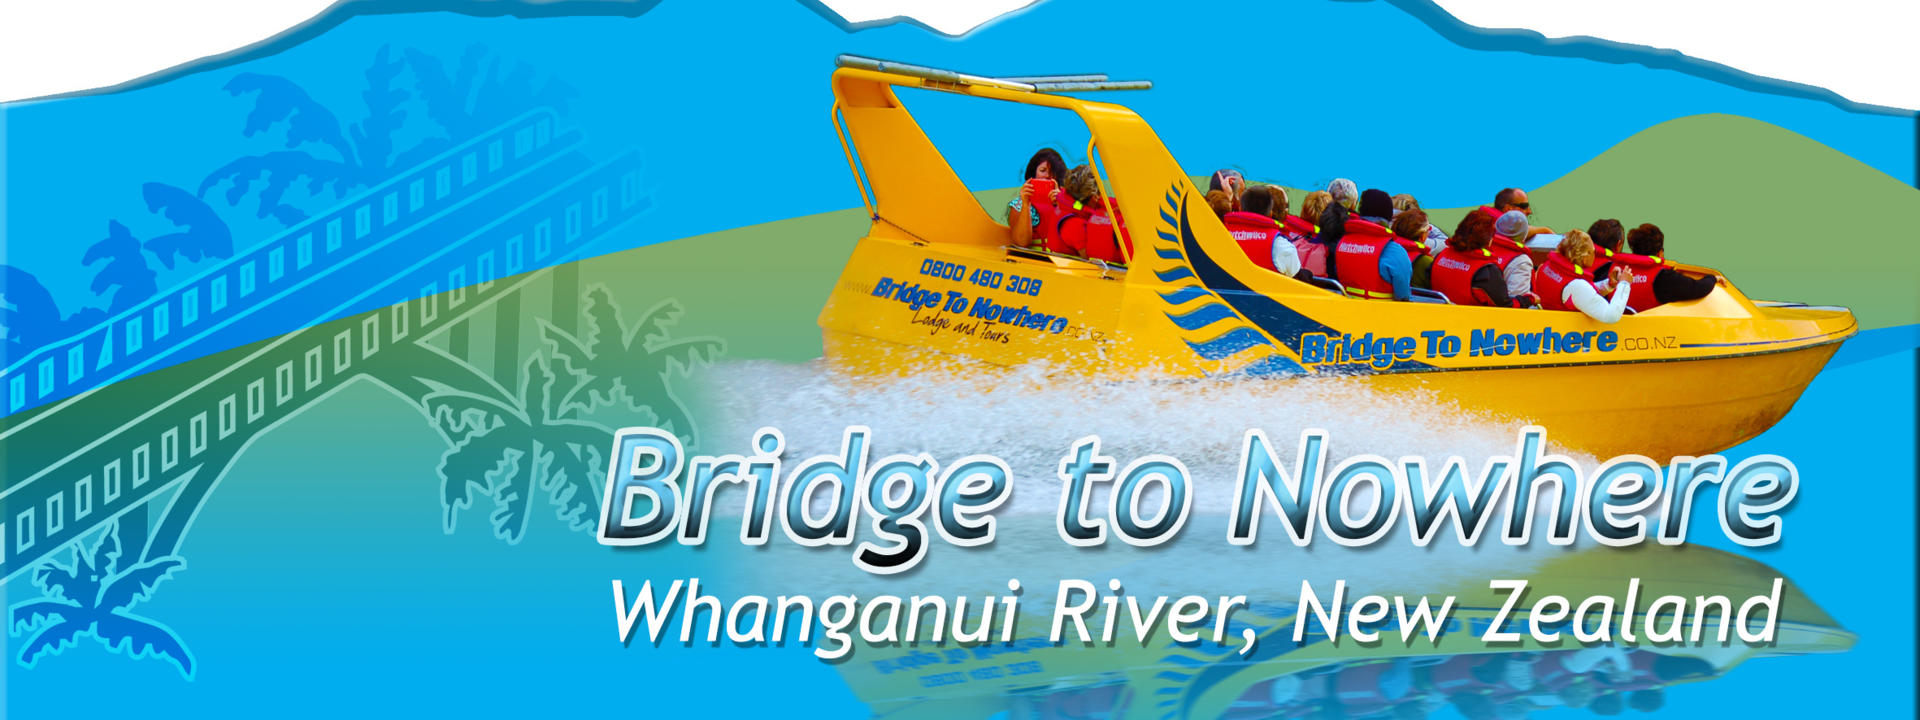 Logo: Bridge to Nowhere, Whanganui River